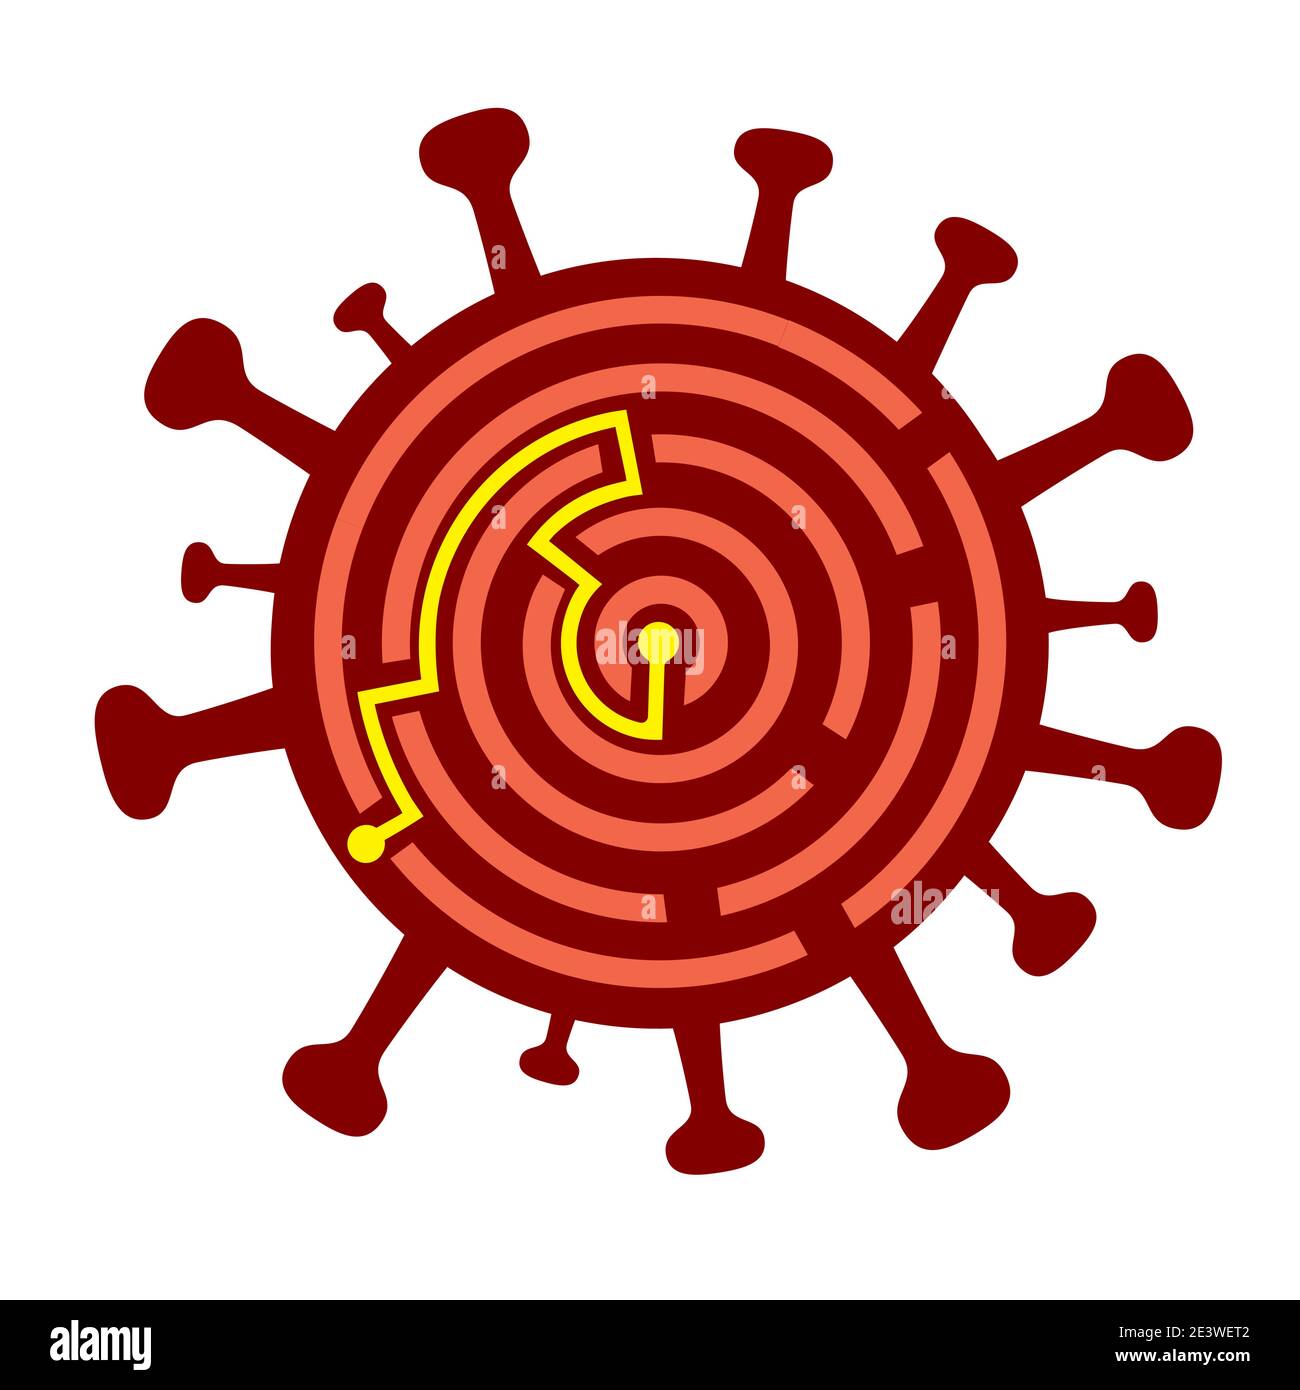 Coronavirus Symbol Labyrinth, Lösungskonzept. Illustration eines Labyrinths, das die Entdeckung des Coronavirus-Impfstoffs und die Lösung der weltweiten Pandemie symbolisiert. Stock Vektor